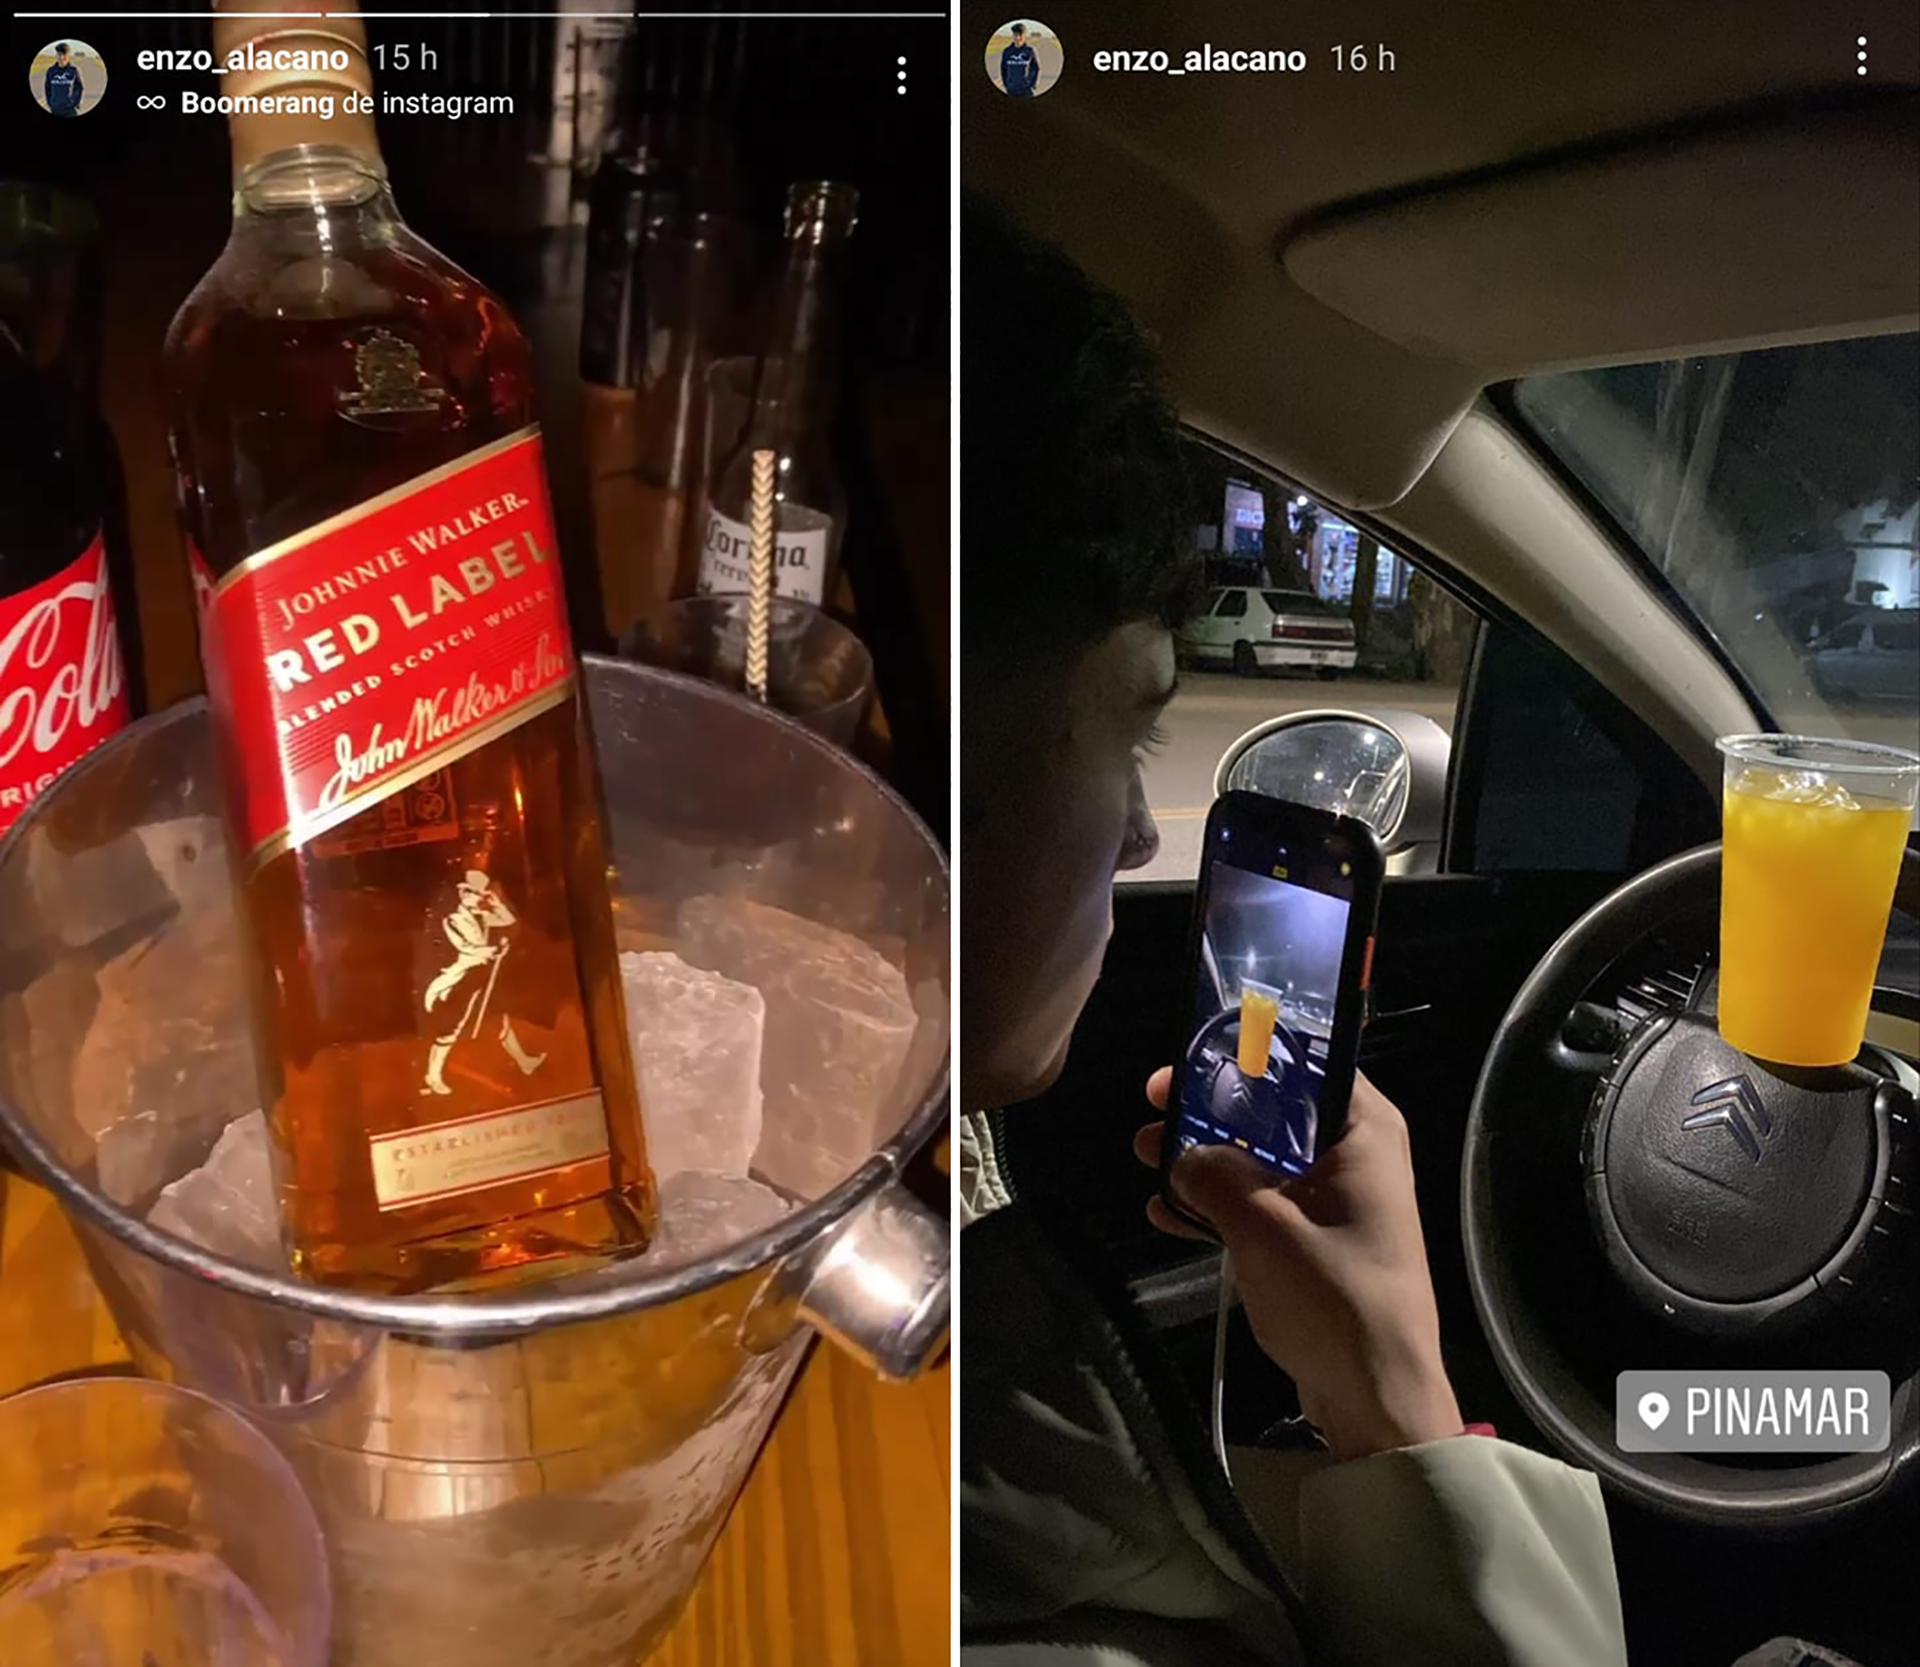 En sus historias de Instagram, Alacano compartió algunas imágenes de bebidas alcohólicas